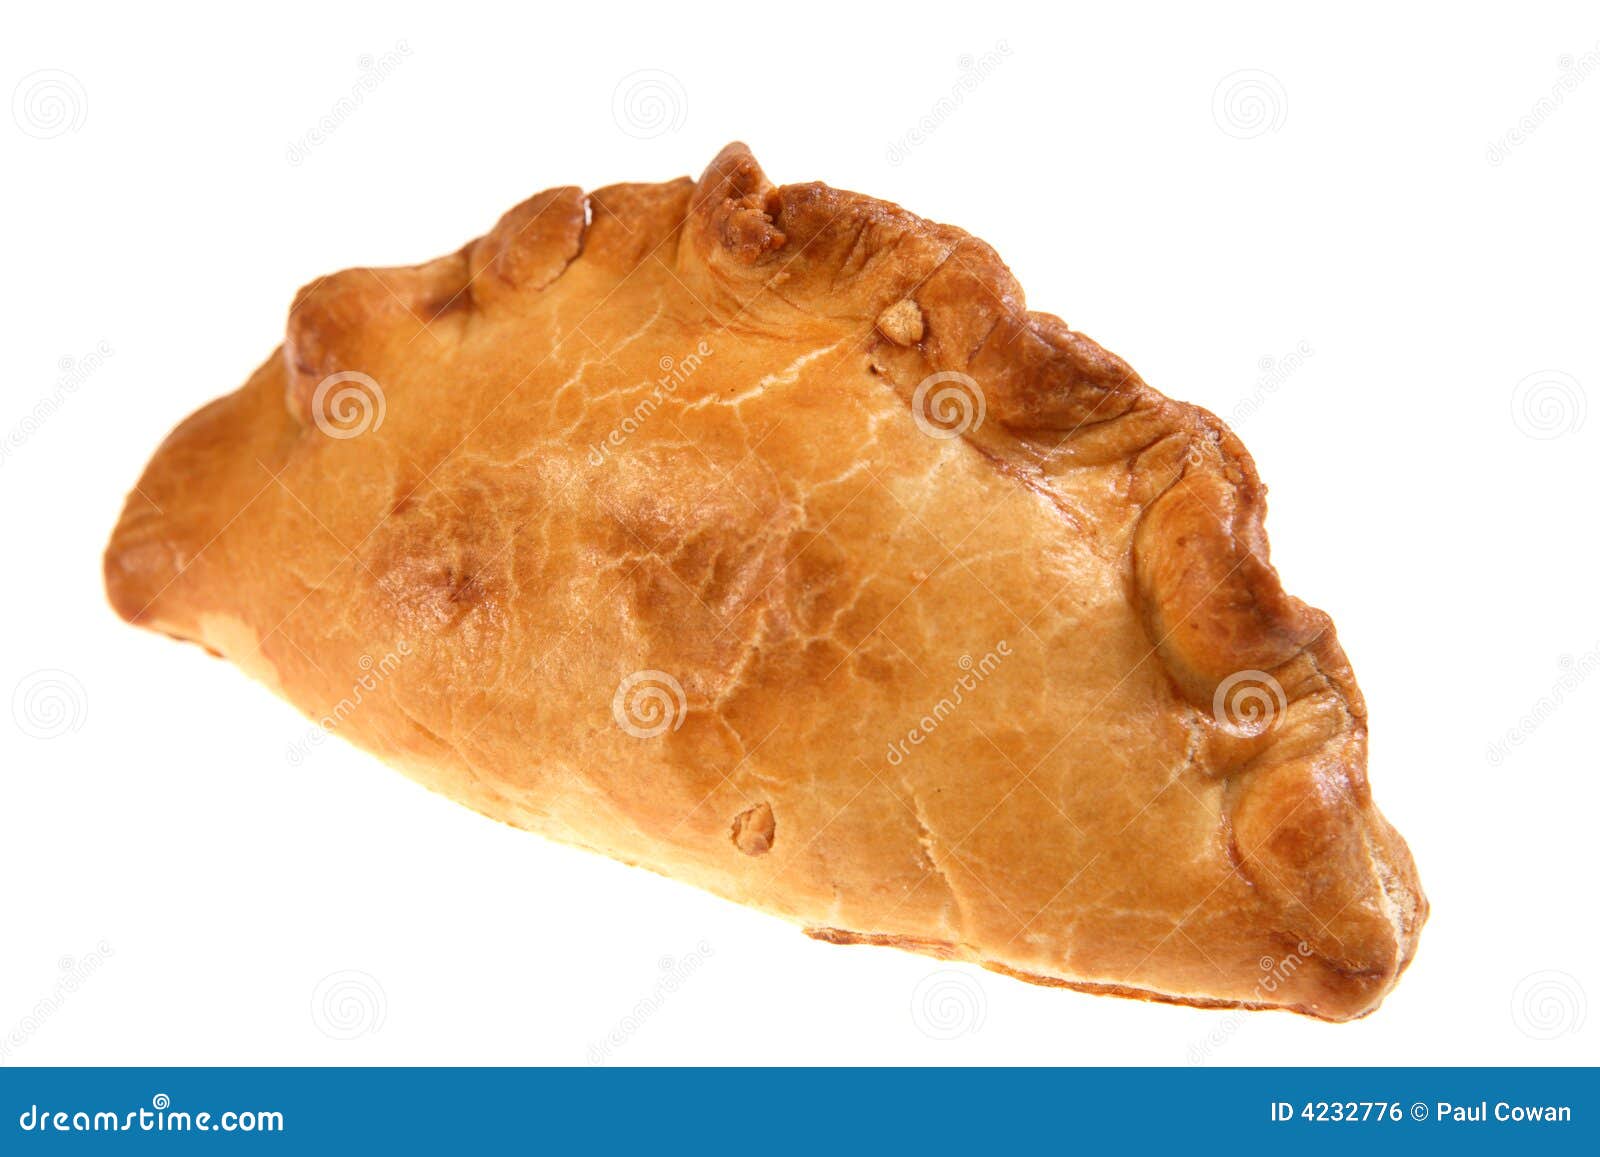  cornish pasty meat pie